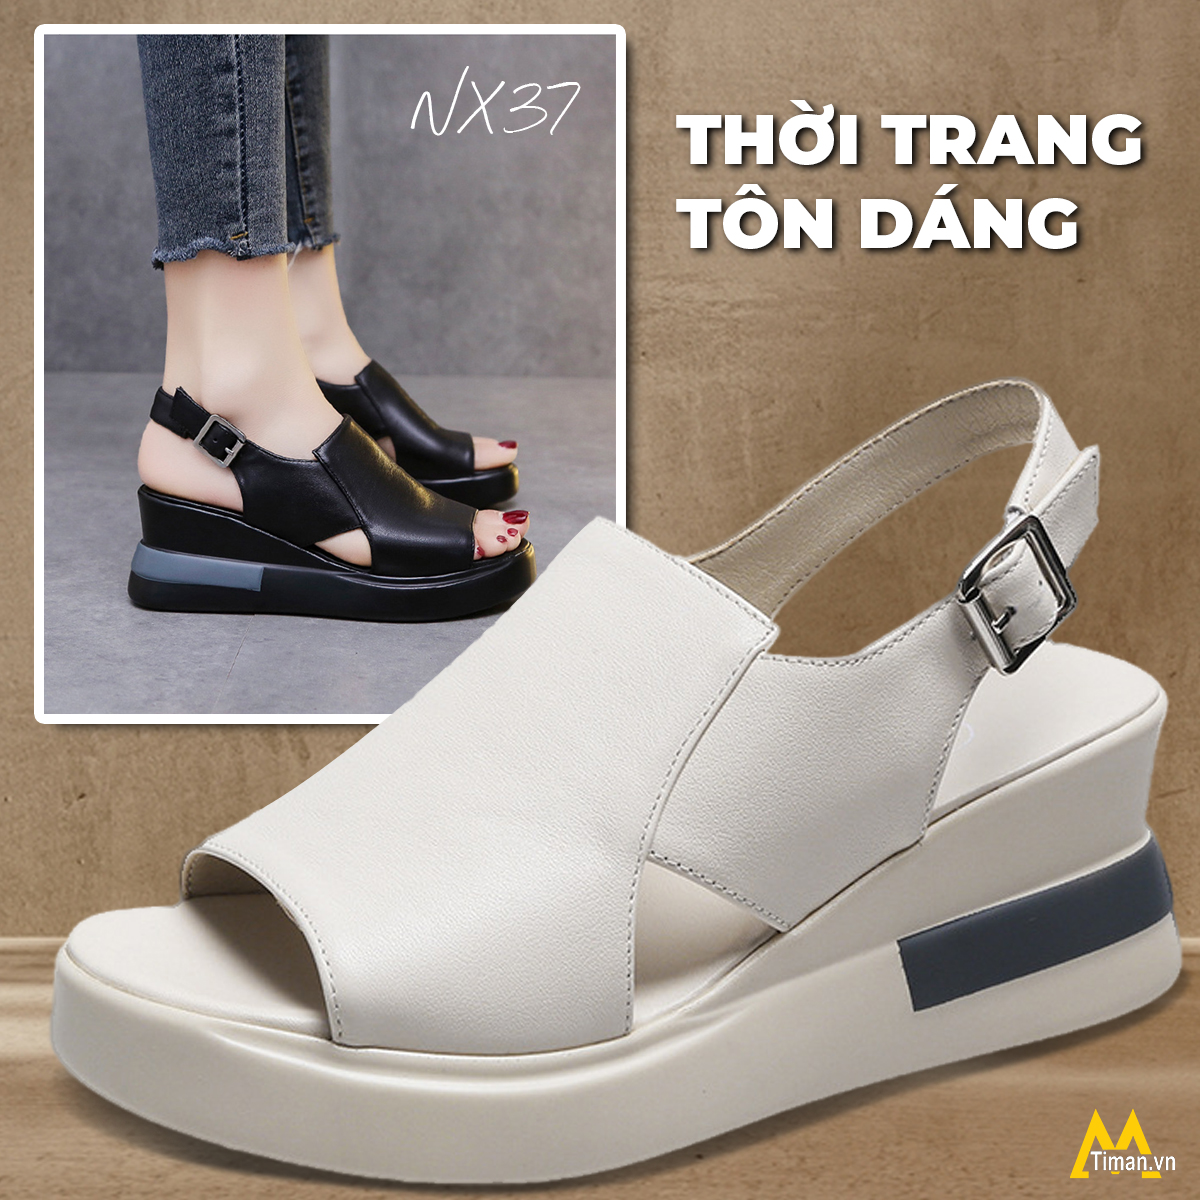 Giày sandal nữ NX37 mang đến sự tâm huyết của thương hiệu Timan